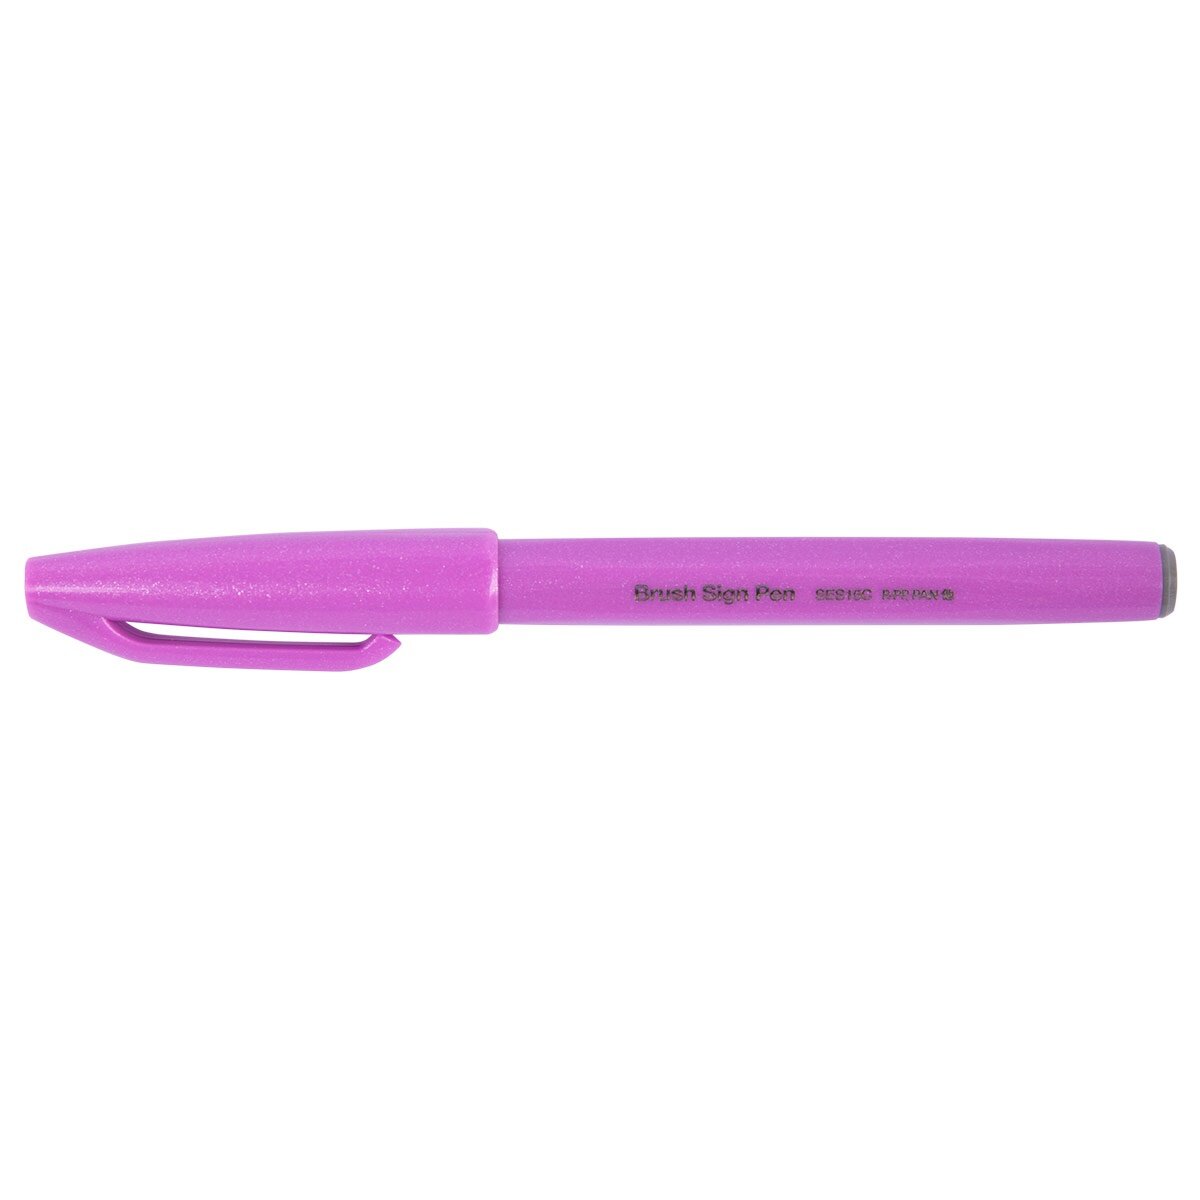 Фломастер-кисть Pentel "Brush Sign Pen", сиреневый, 2 мм